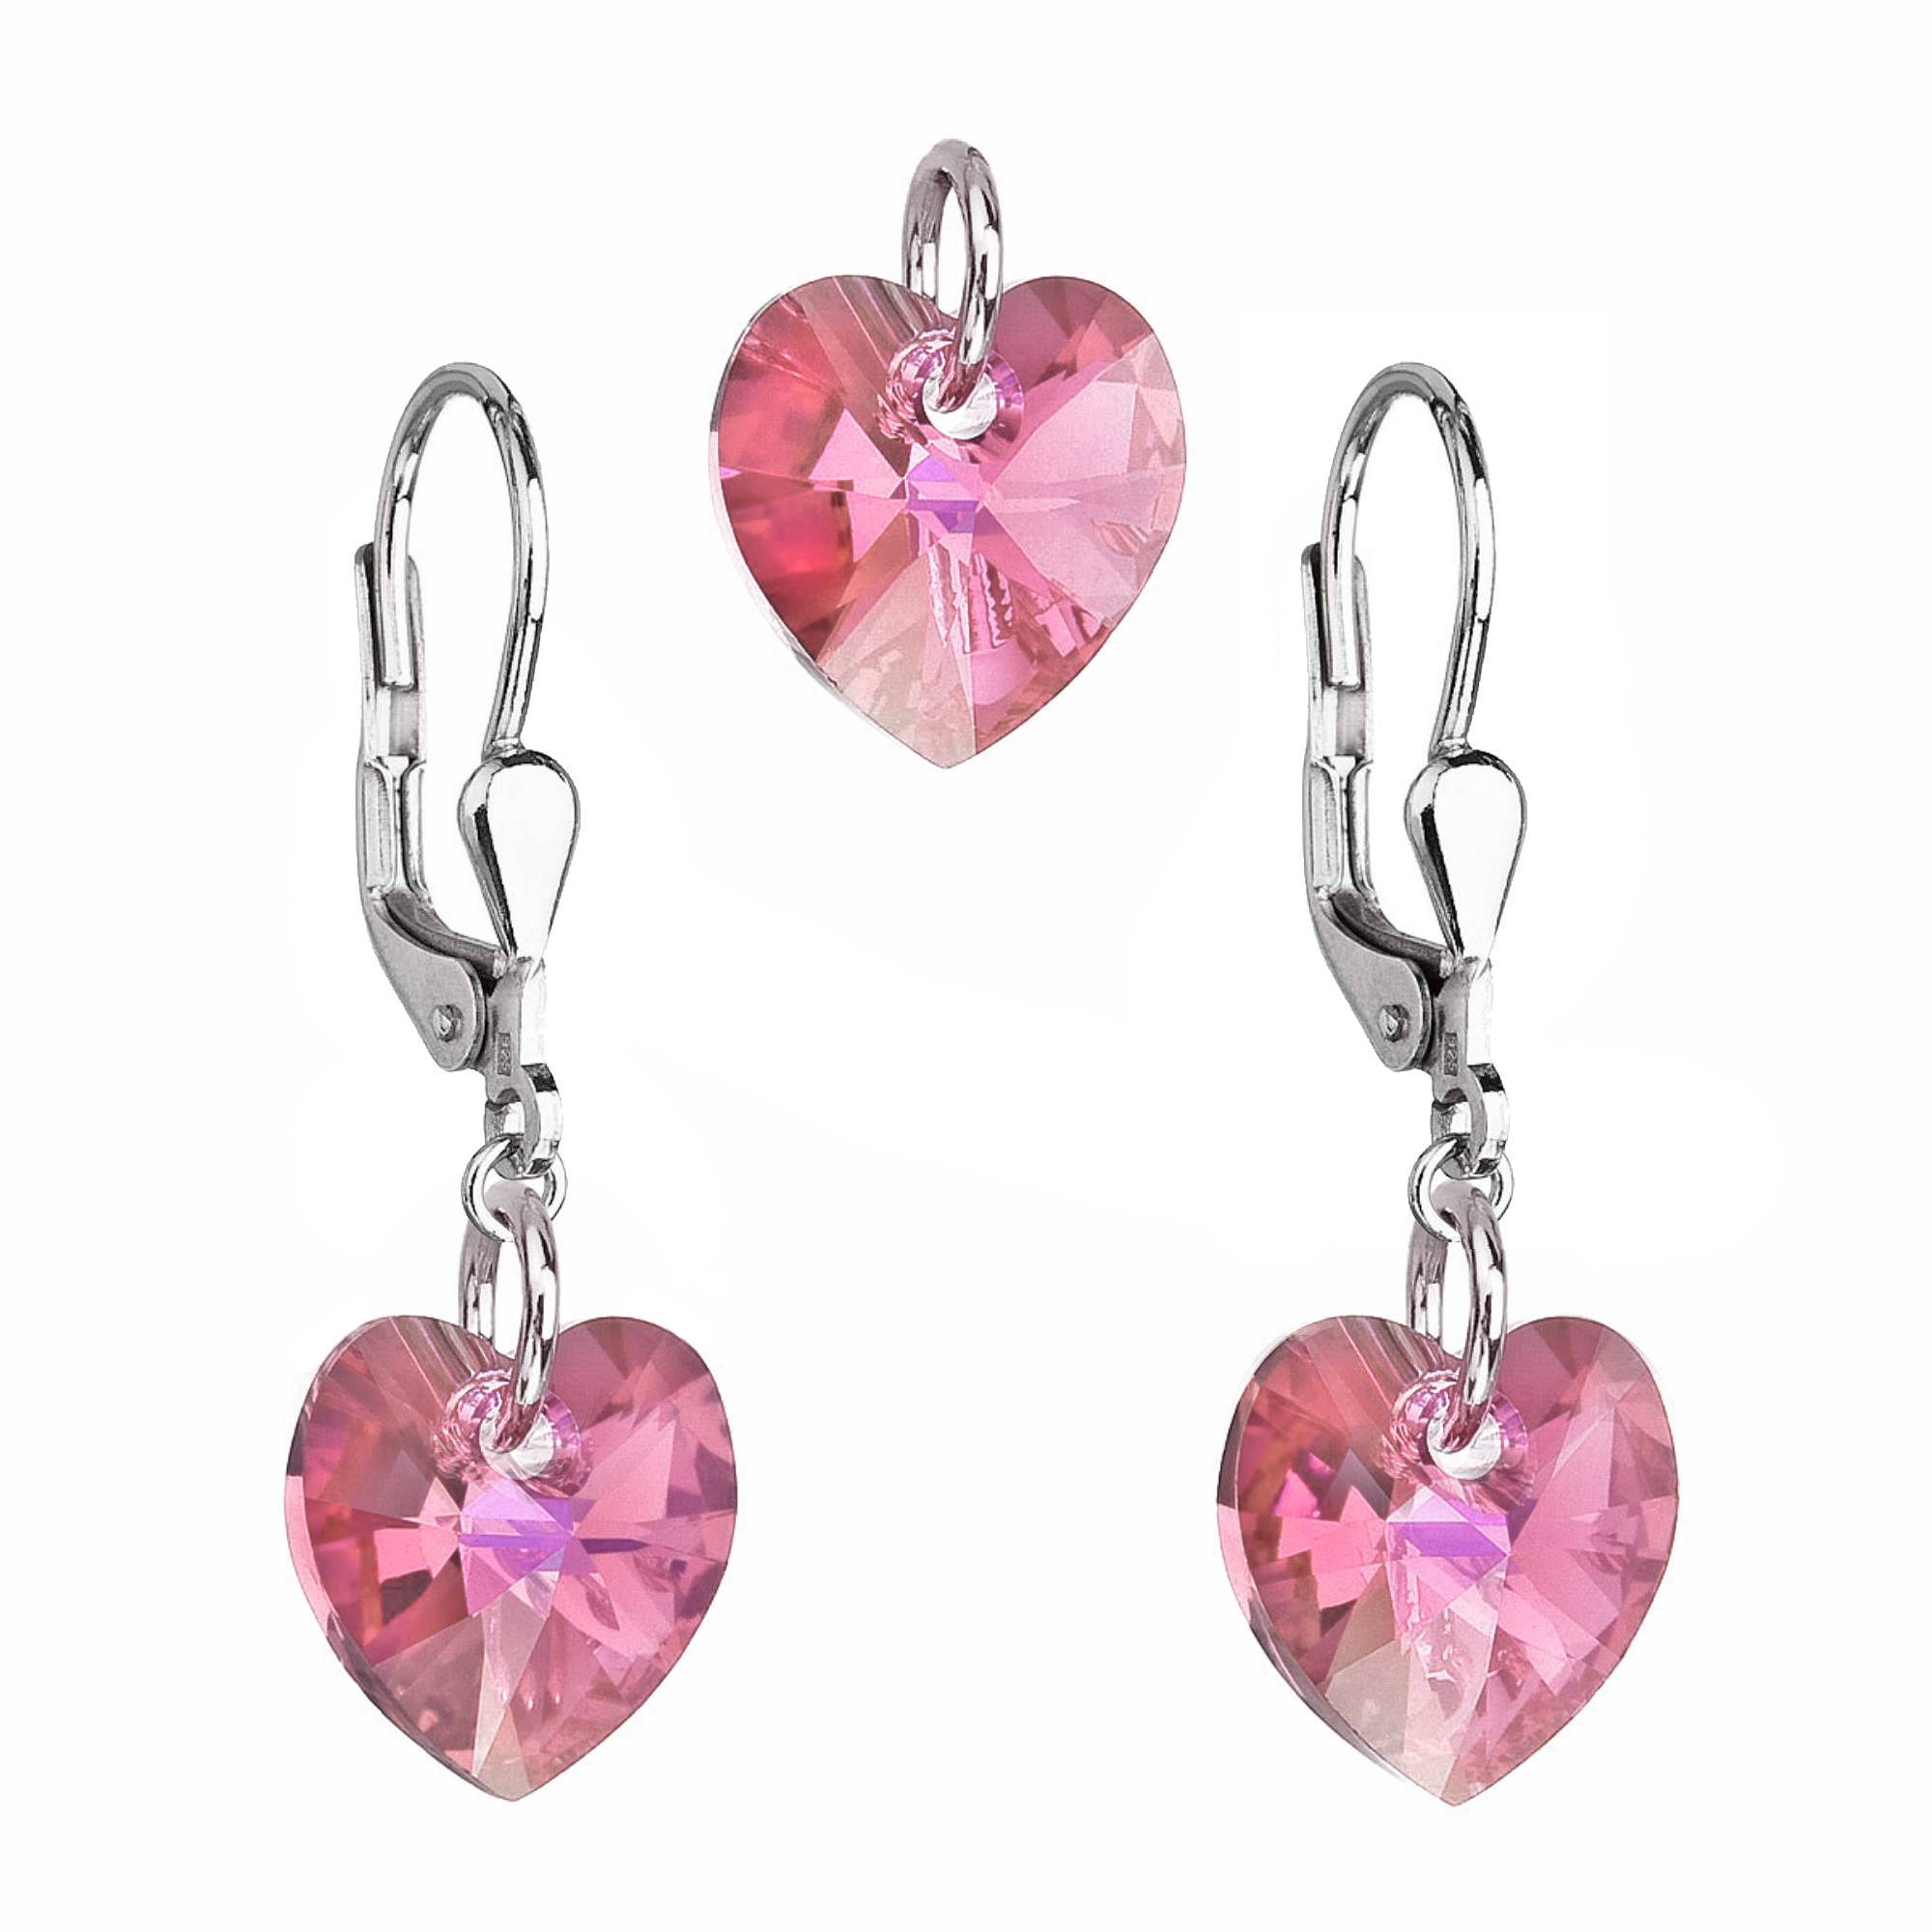 Evolution Group Sada šperků s krystaly Swarovski náušnice a přívěsek růžová srdce 39003.3 rosaline